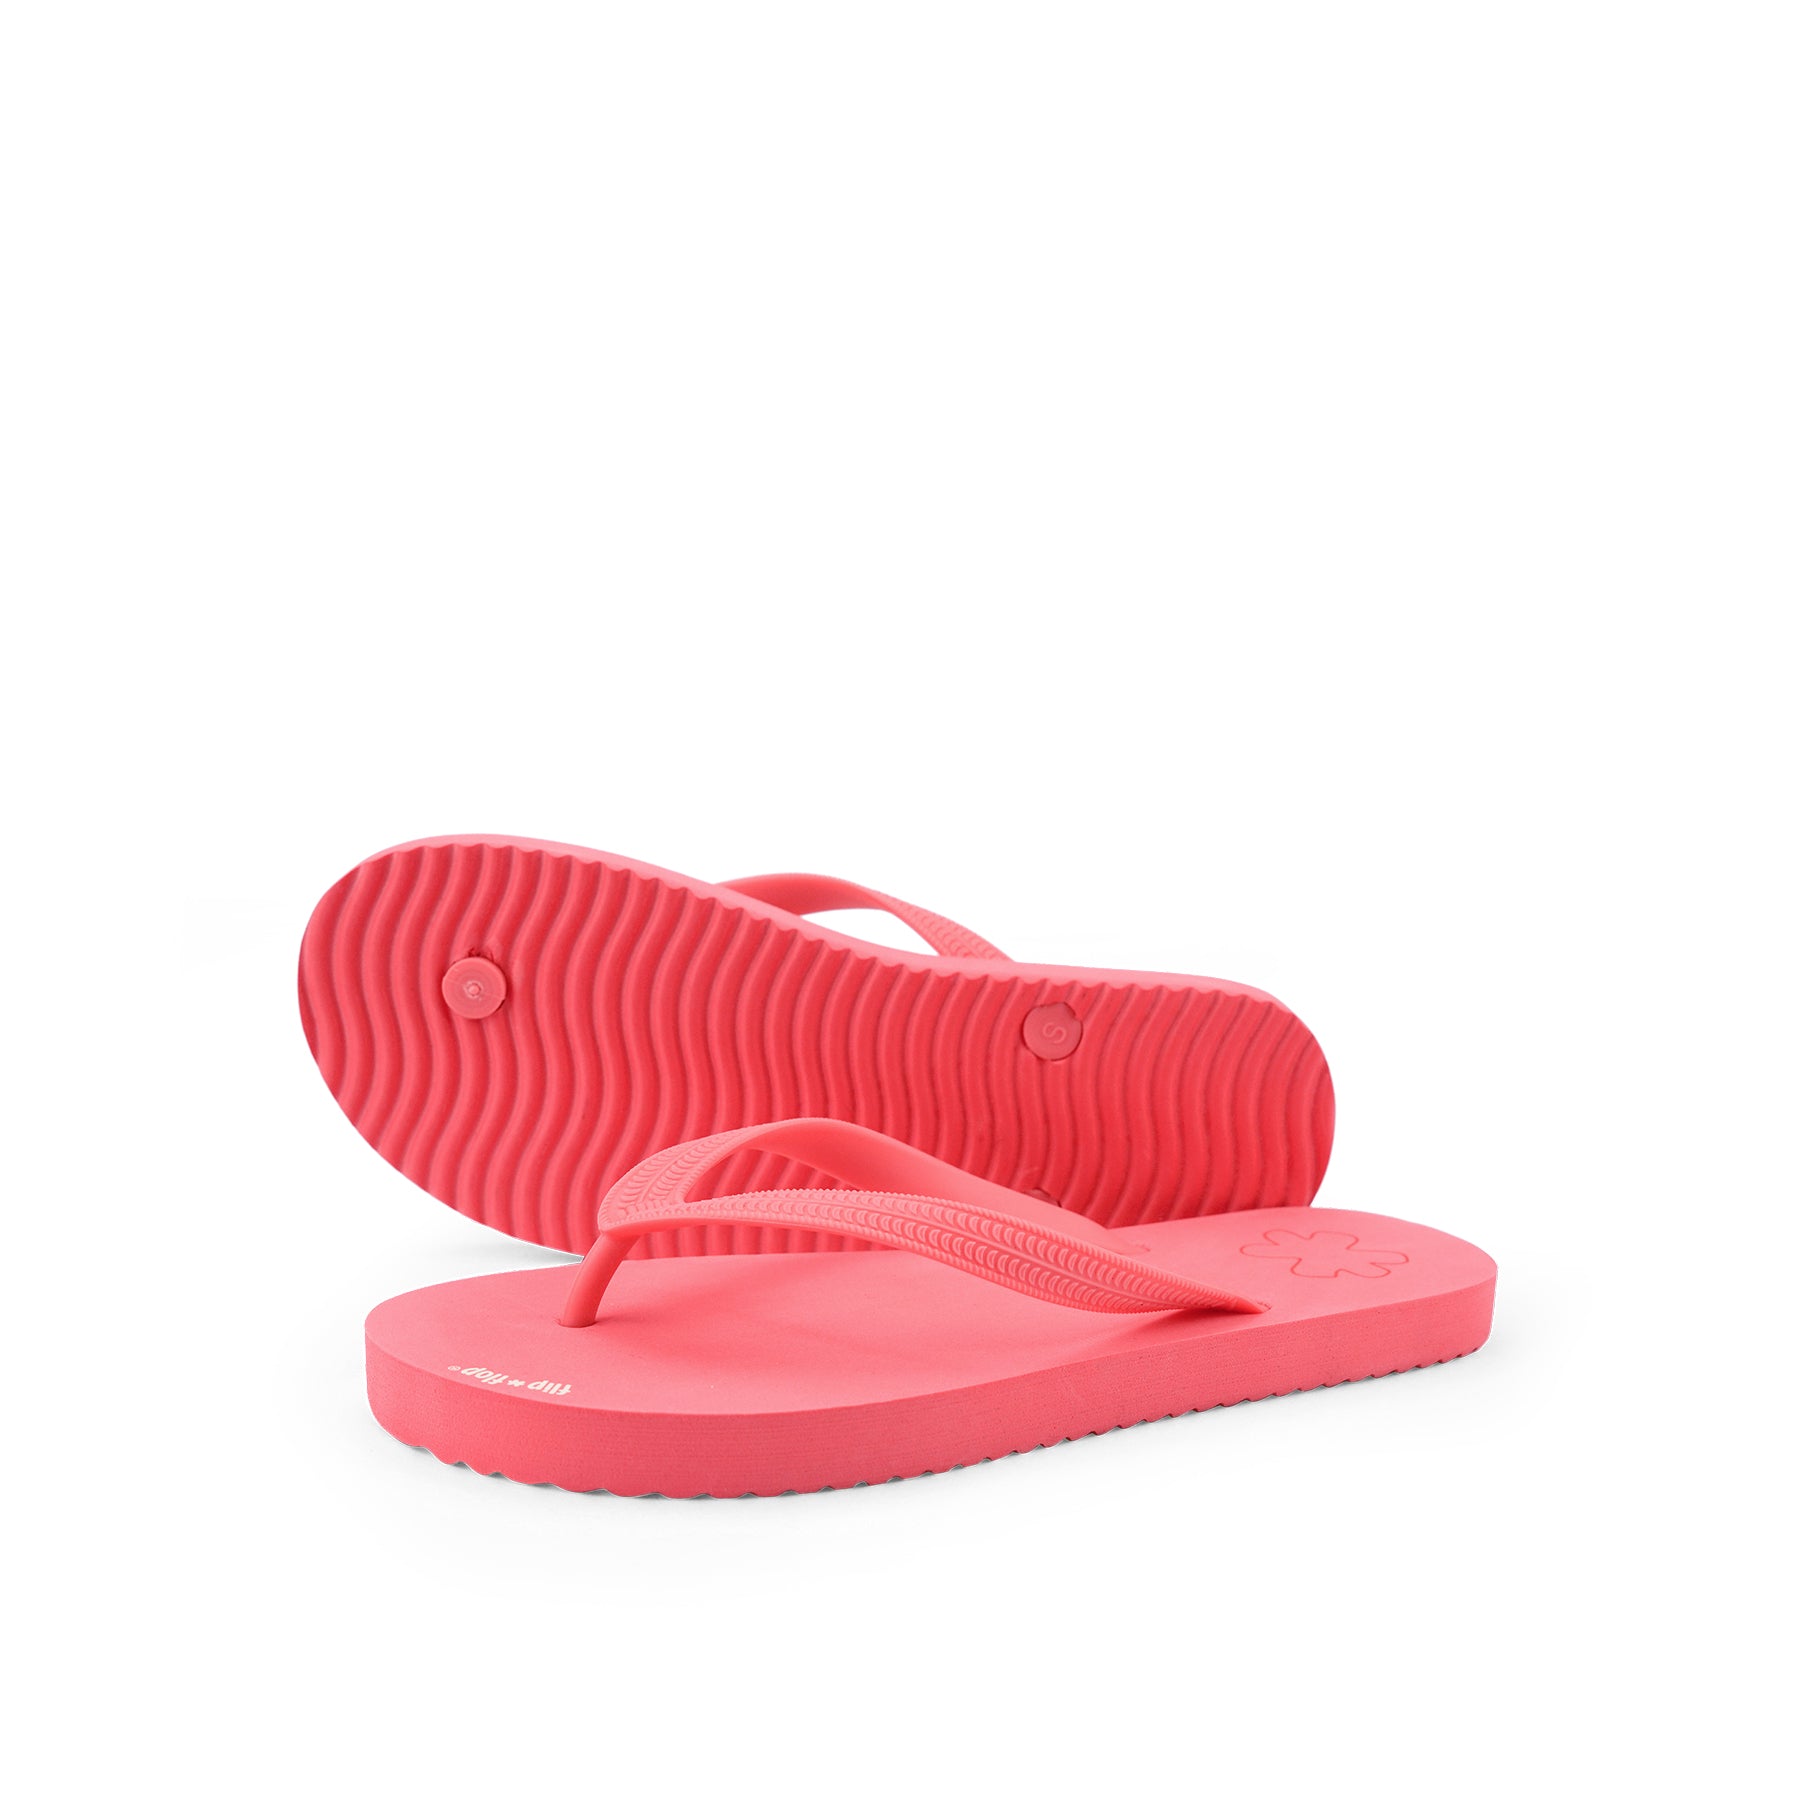 Flip Flop vegan in color blush red  by Flip*Flop Original